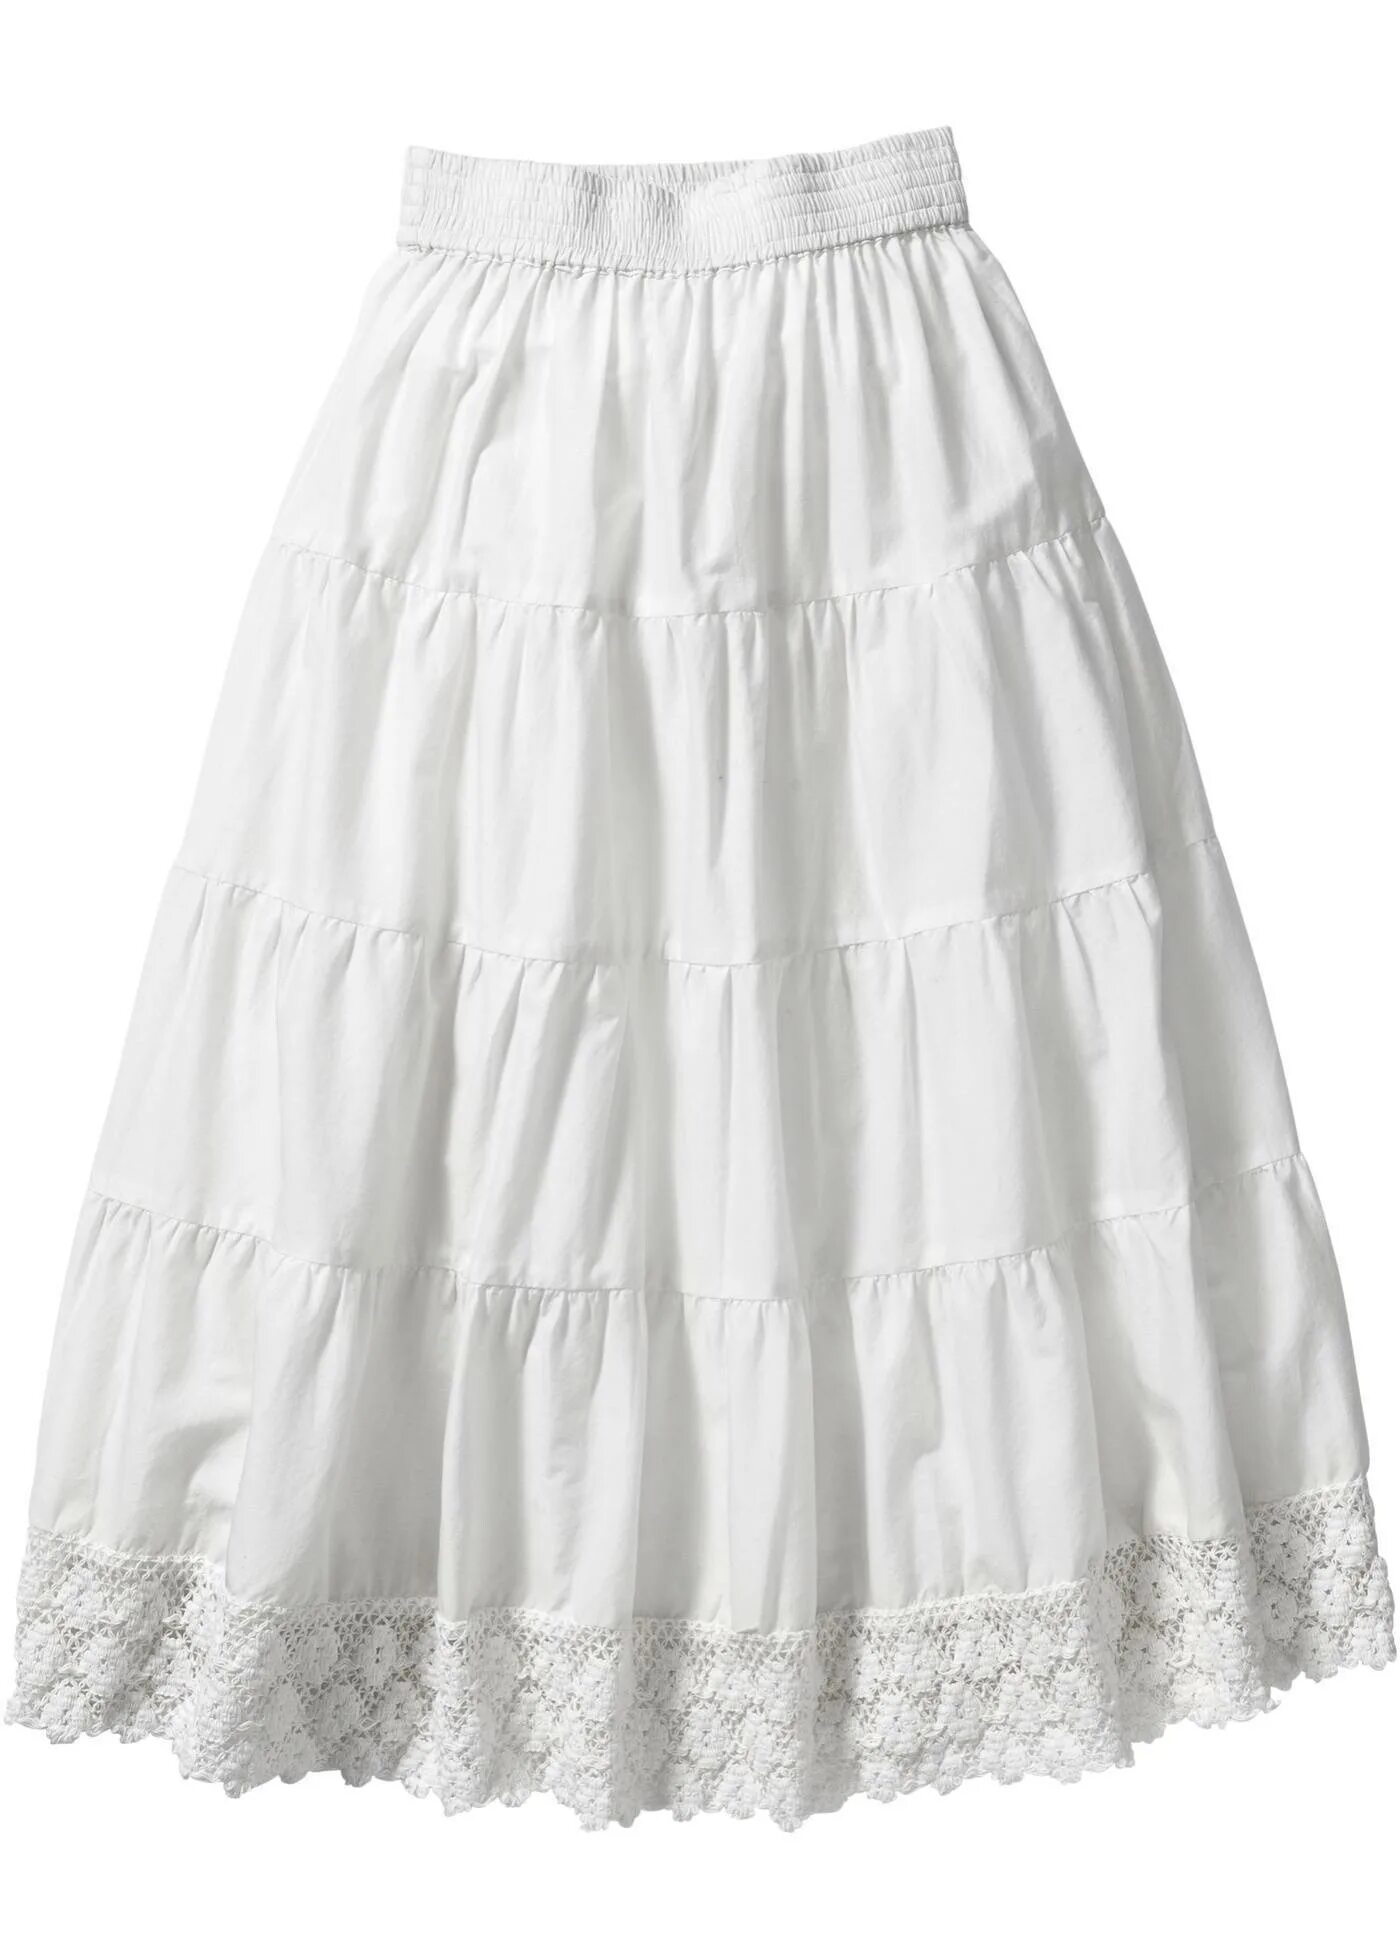 Юбка из муслина. Белая юбка. Хлопчатобумажная юбка. Белая юбка для девочки. Белая летняя юбка.